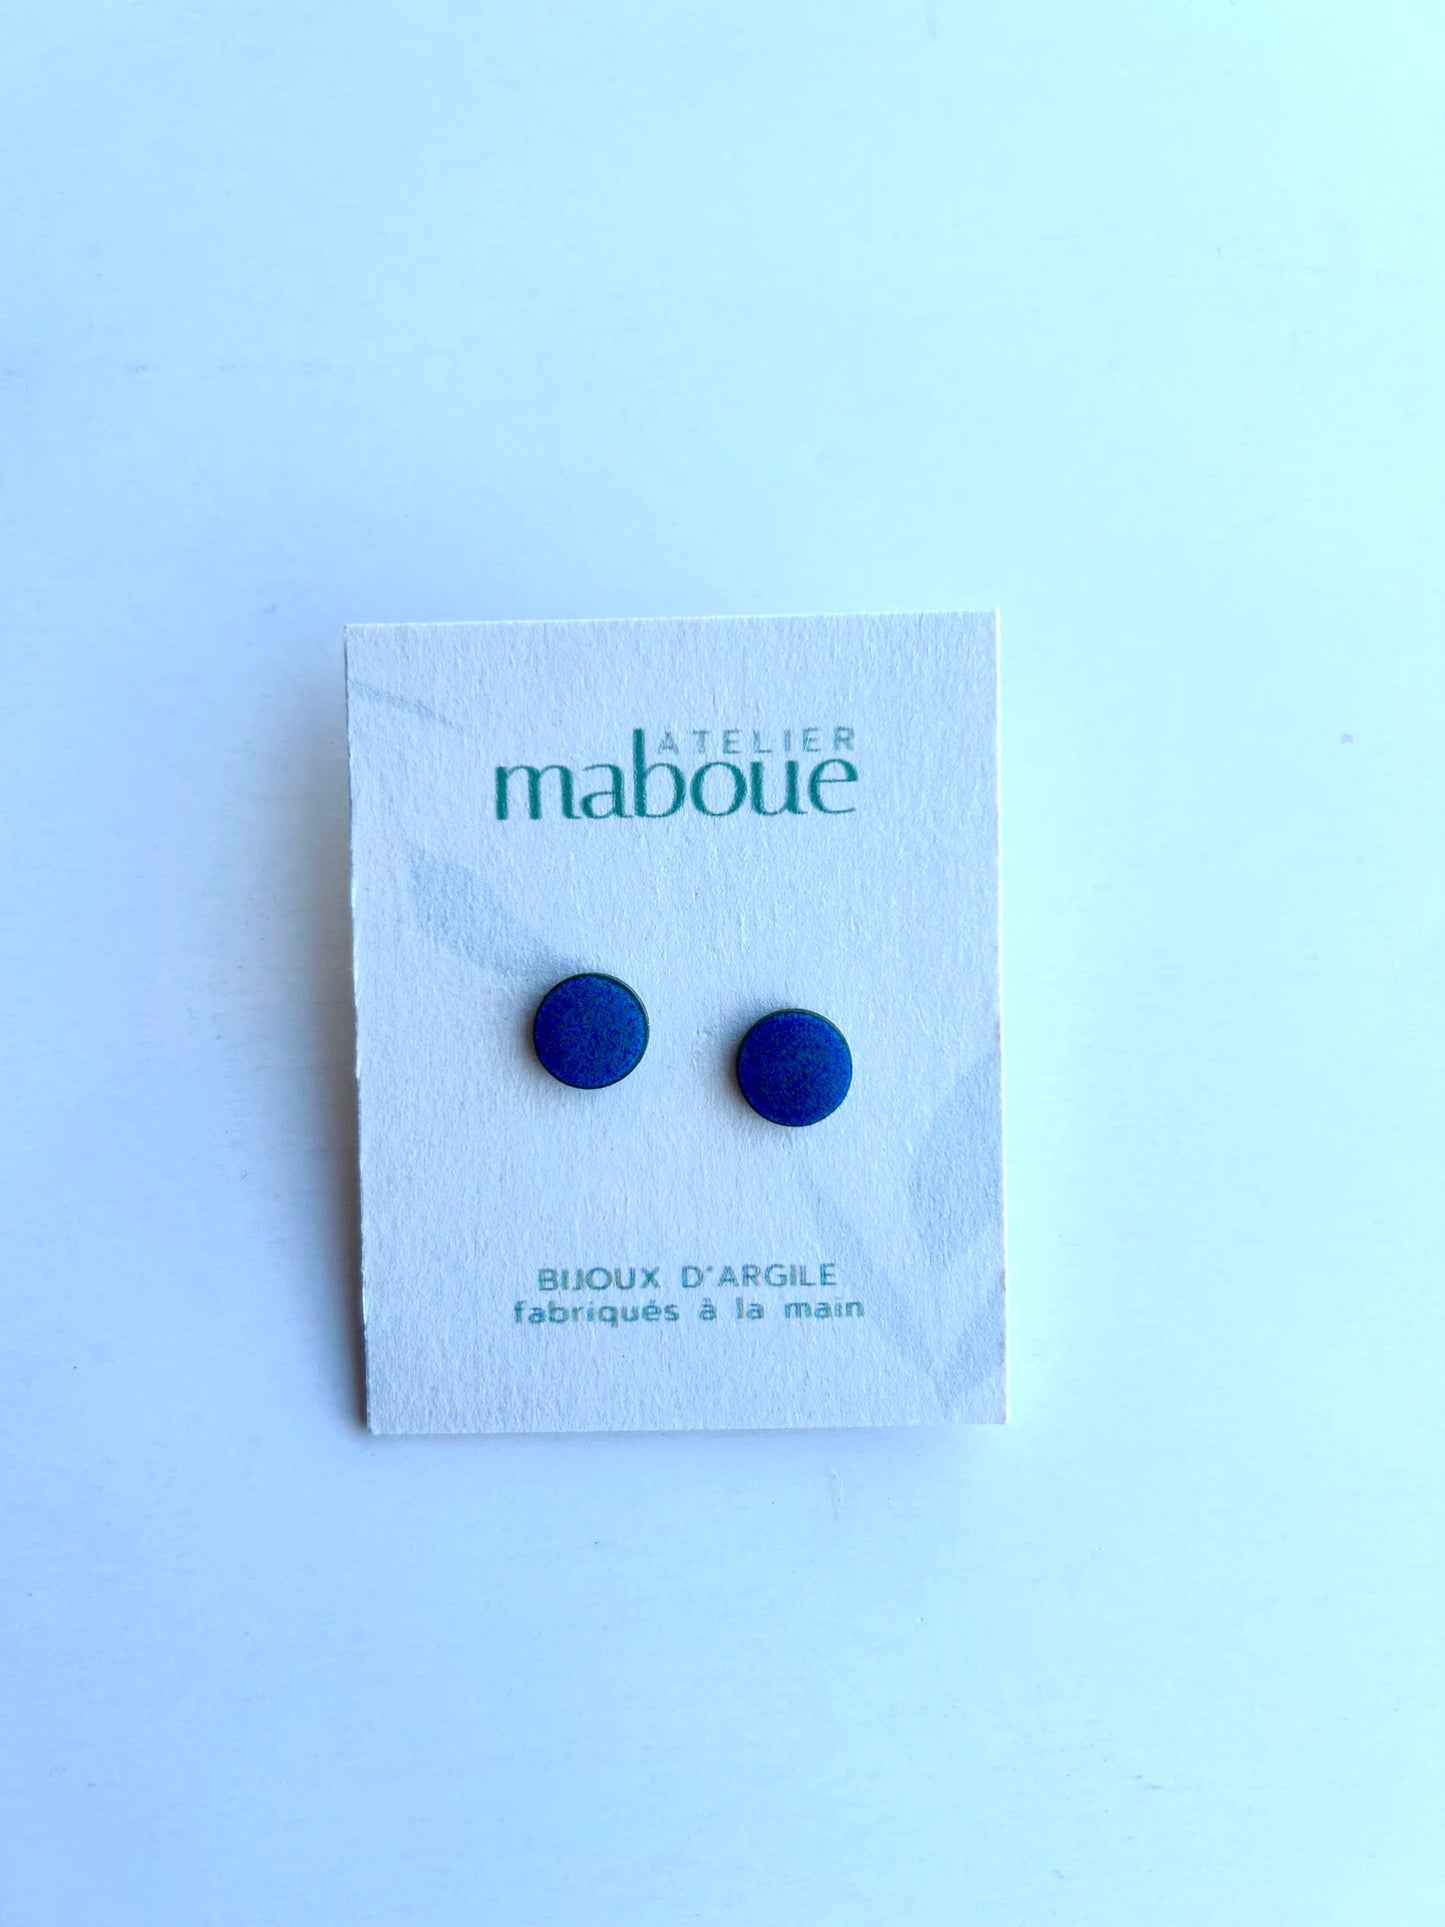 Boucles d'oreilles Maboue, couleurs variées